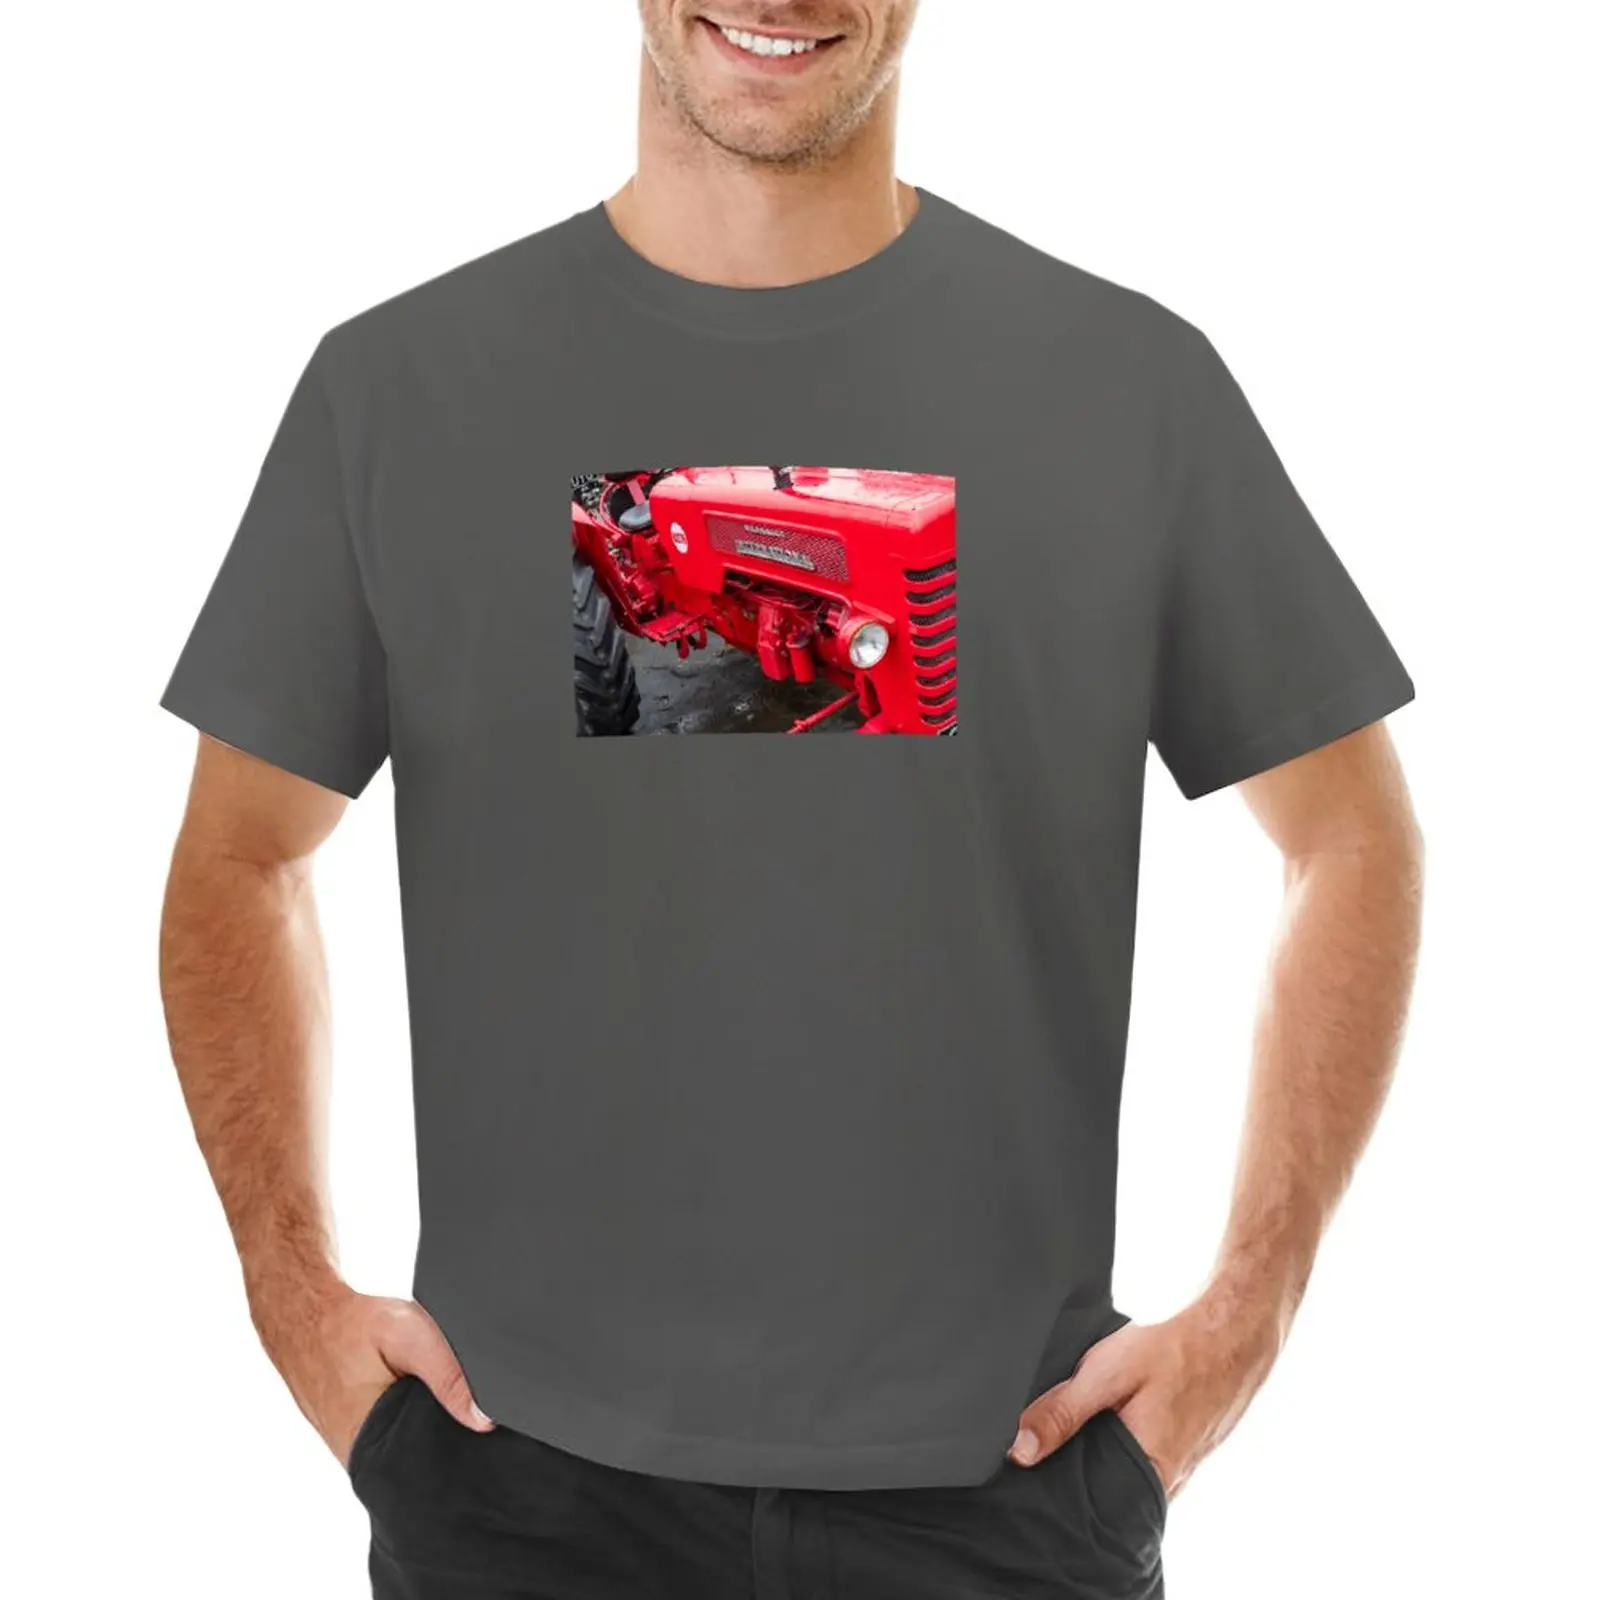 Восстановленная футболка International B275 с трактором, летняя одежда для тяжеловесов, топы больших размеров, спортивные рубашки с графикой, мужские